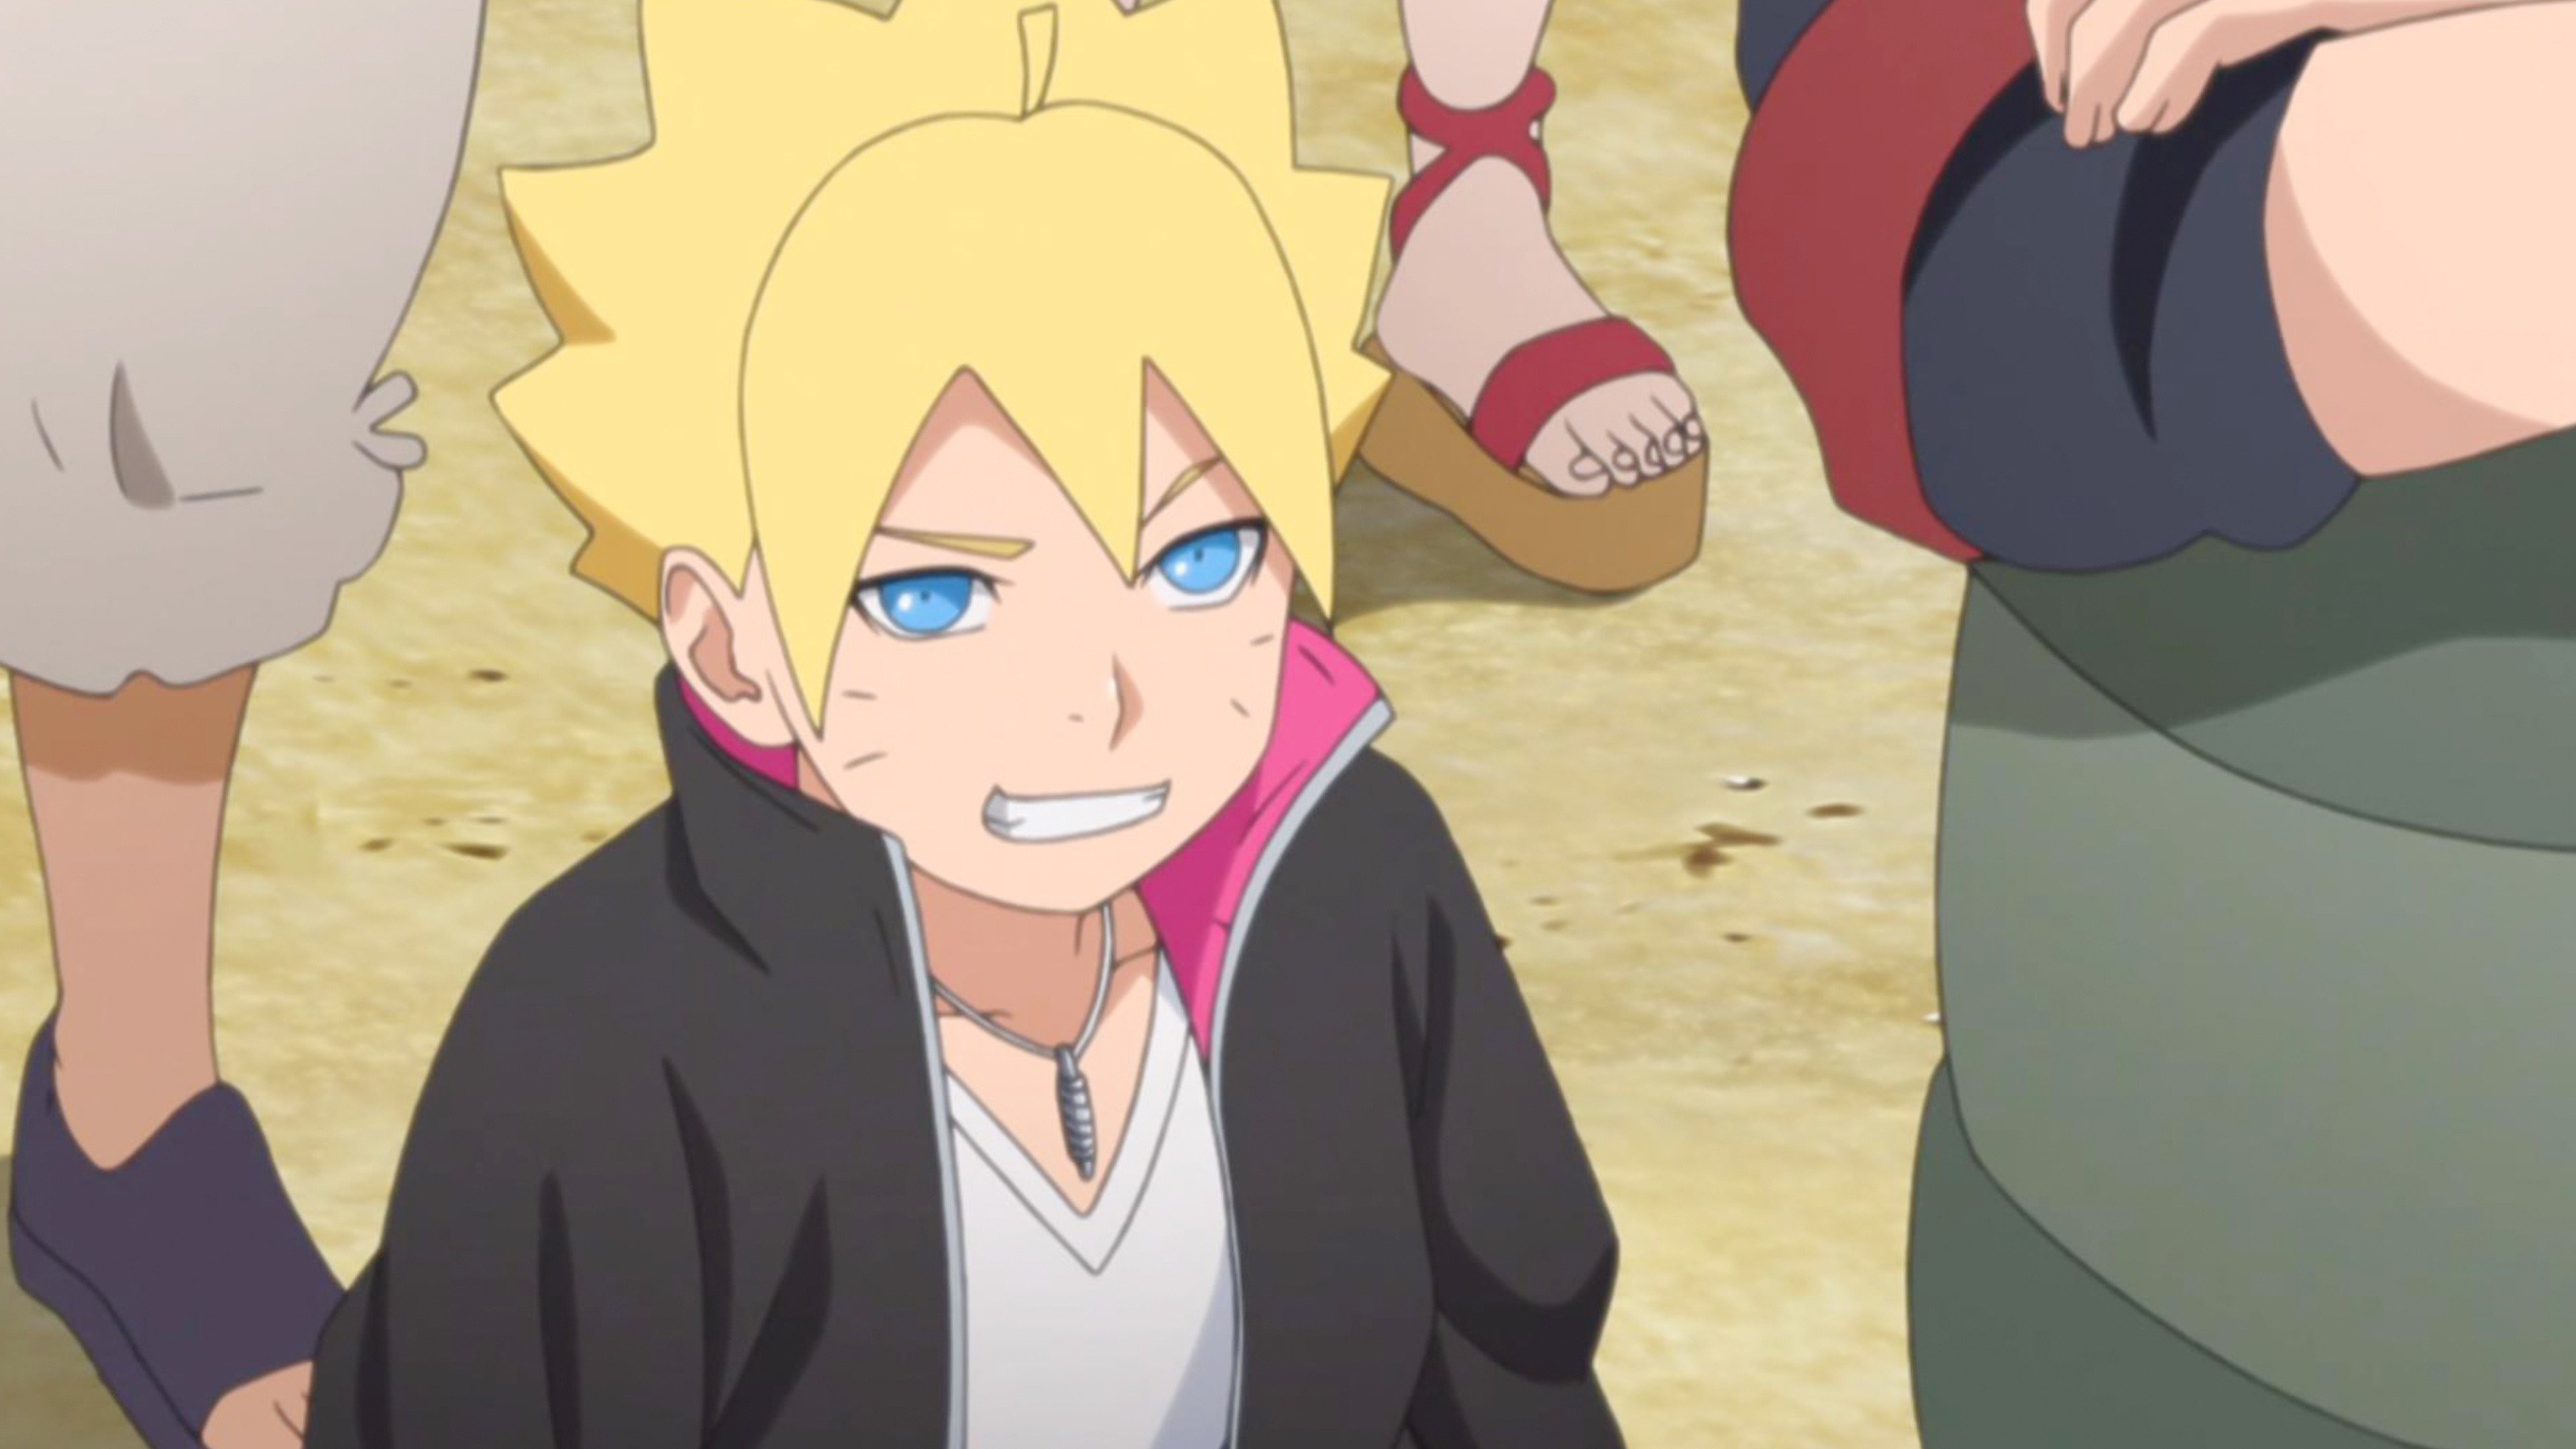 Boruto: Naruto Next Generations Episode 235 - Anime Review